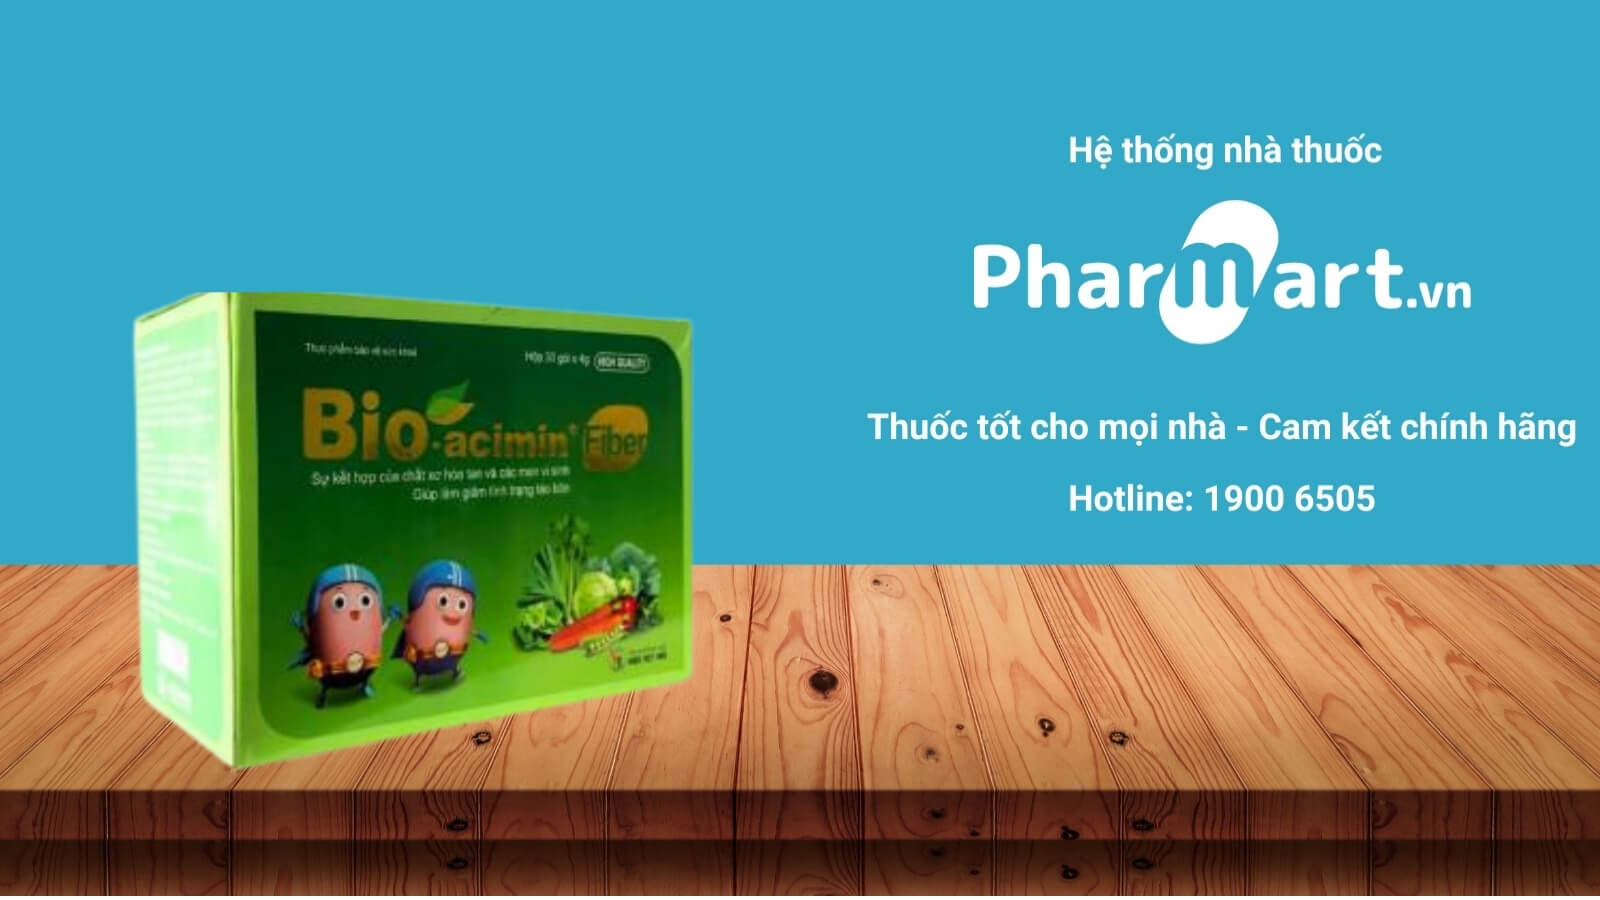 Mua ngay cốm Bio-acimin Fiber chính hãng tại Pharmart.vn